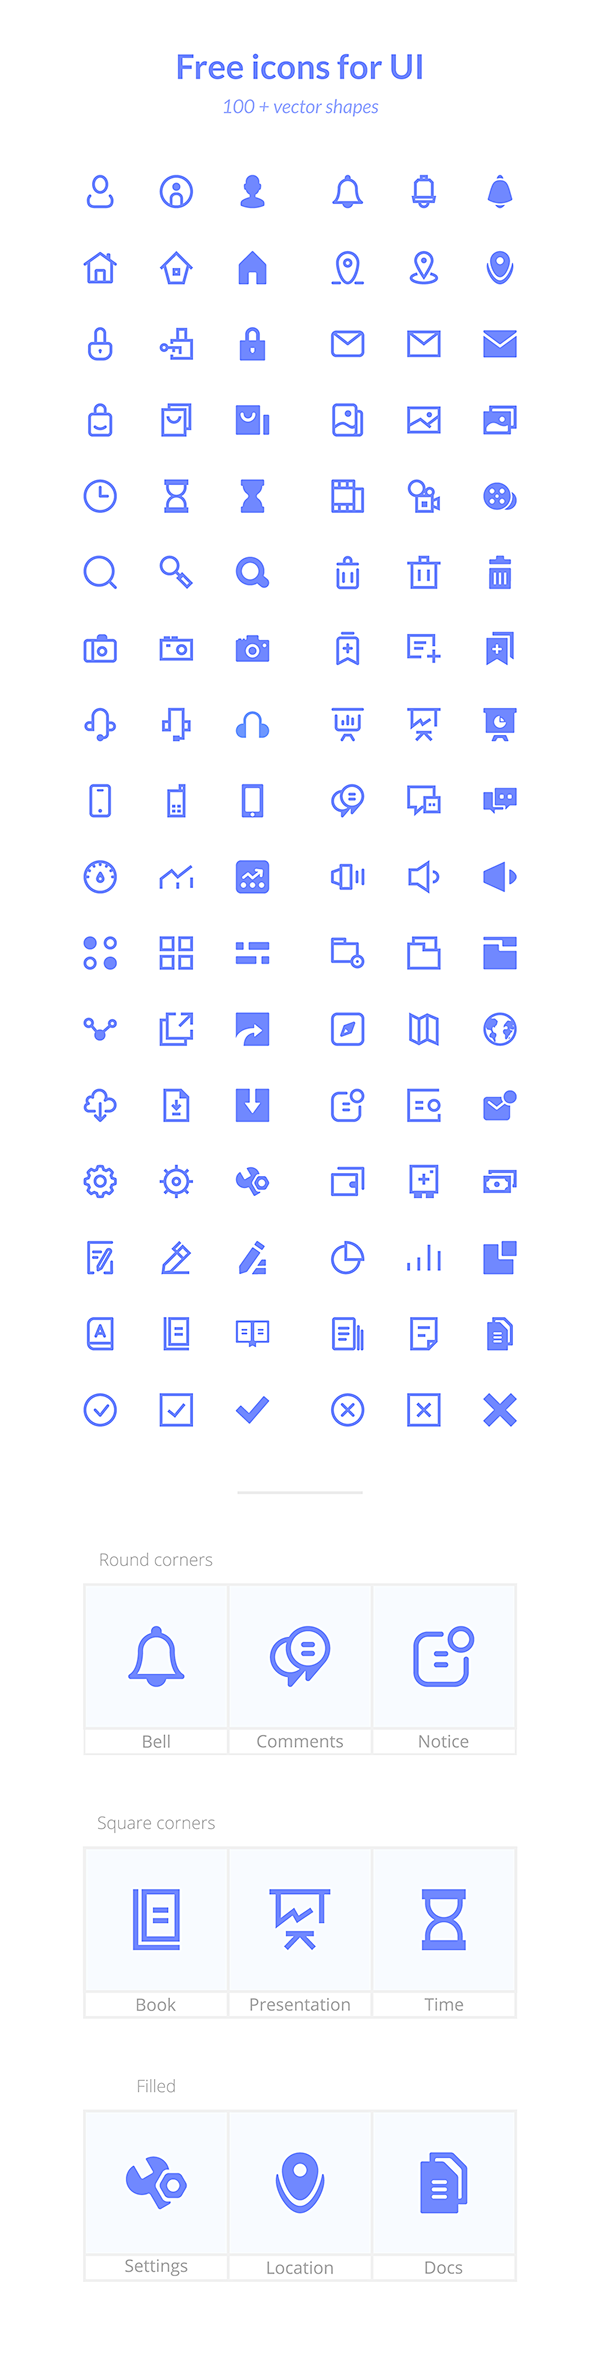 Basic icons for UI (...